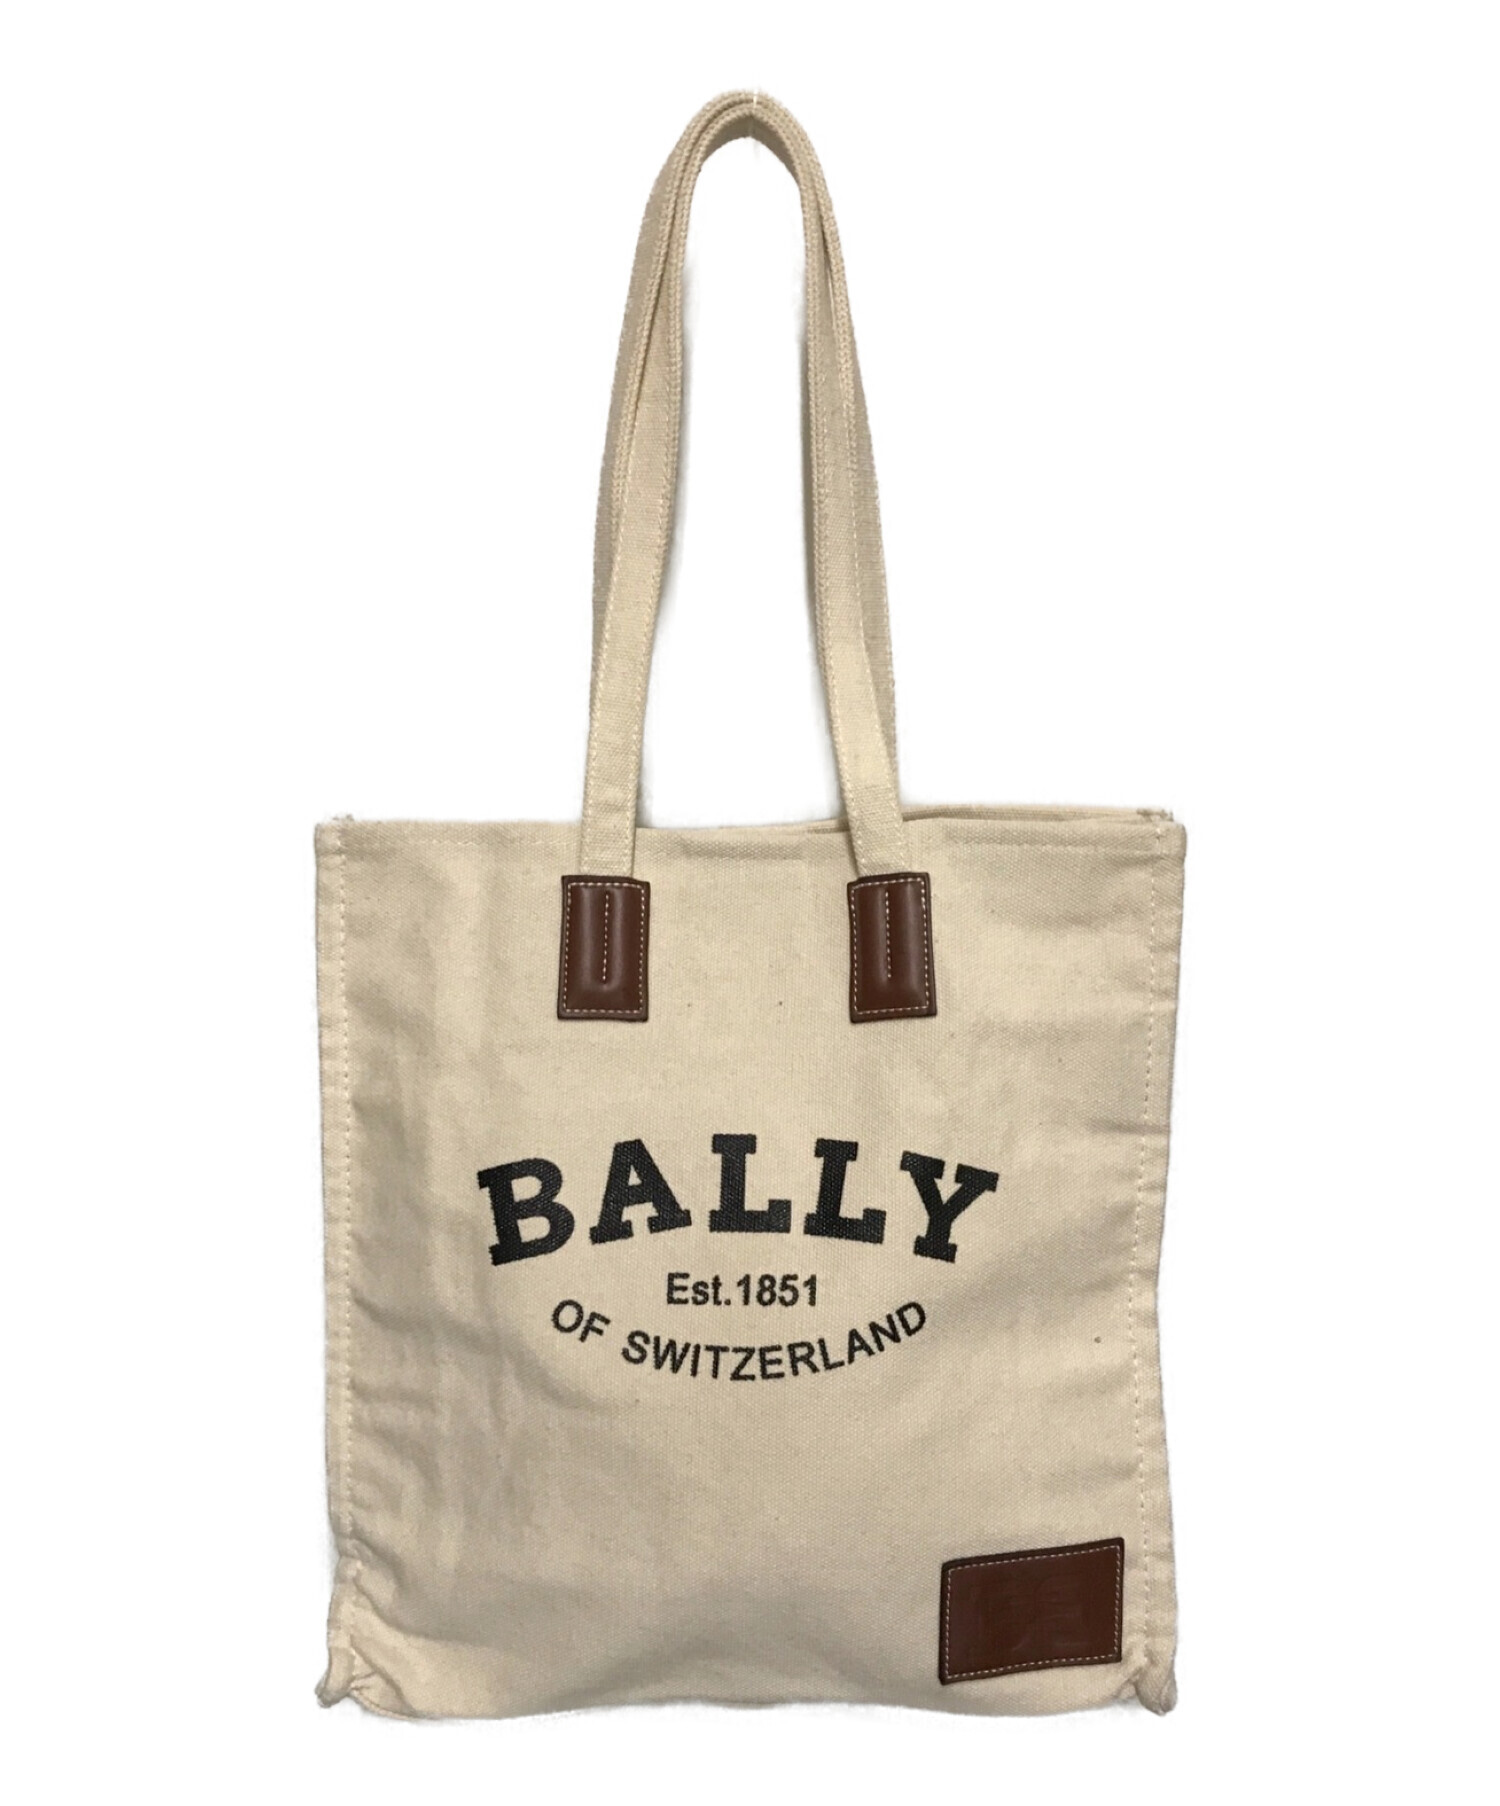 BALLY (バリー) Crystaliaキャンバストートバッグ ホワイト